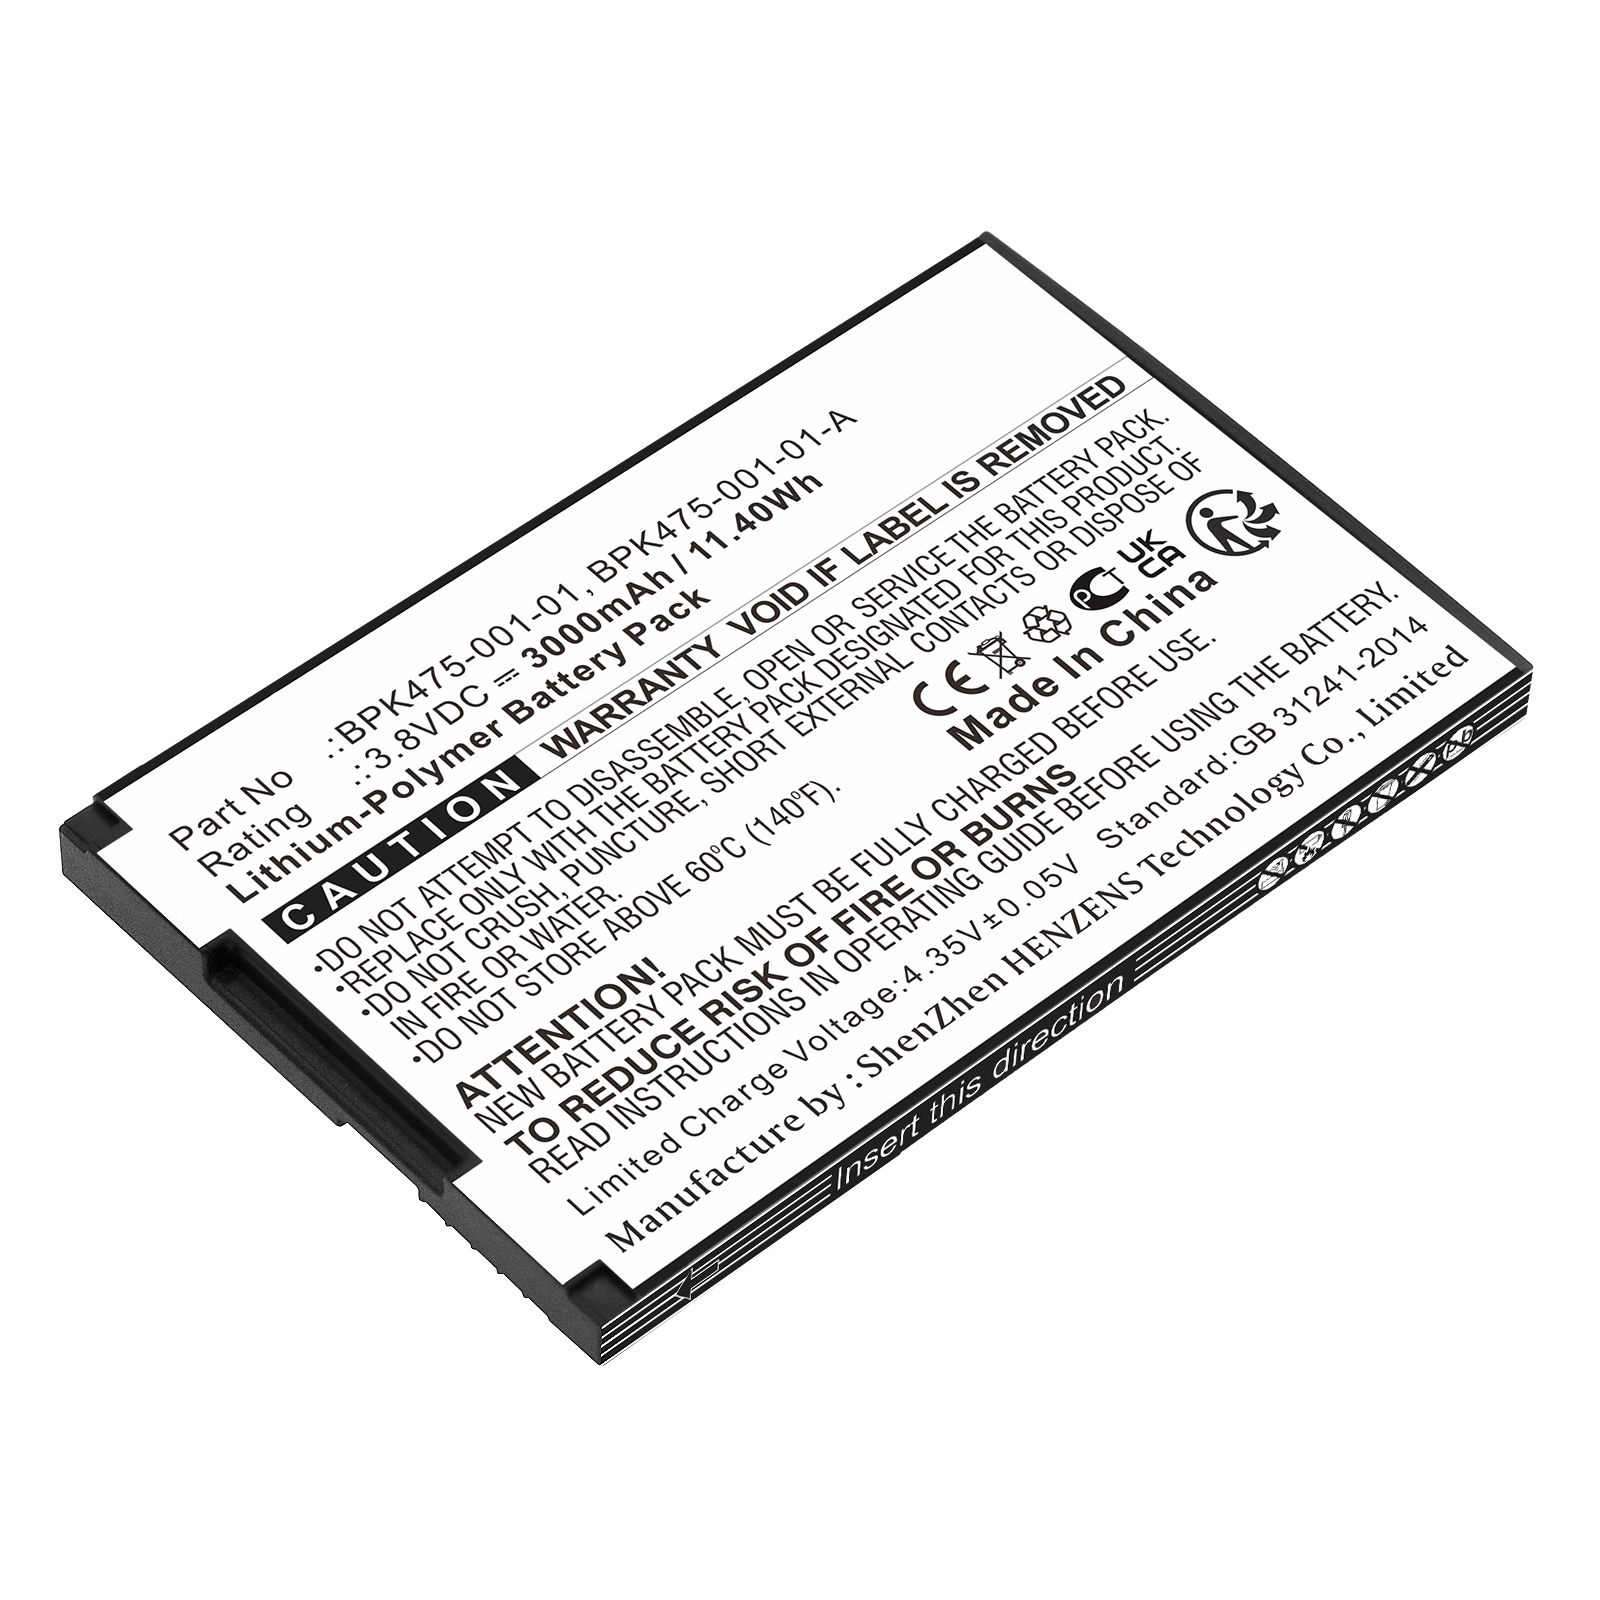 Batteries for VeriFoneCredit Card Reader